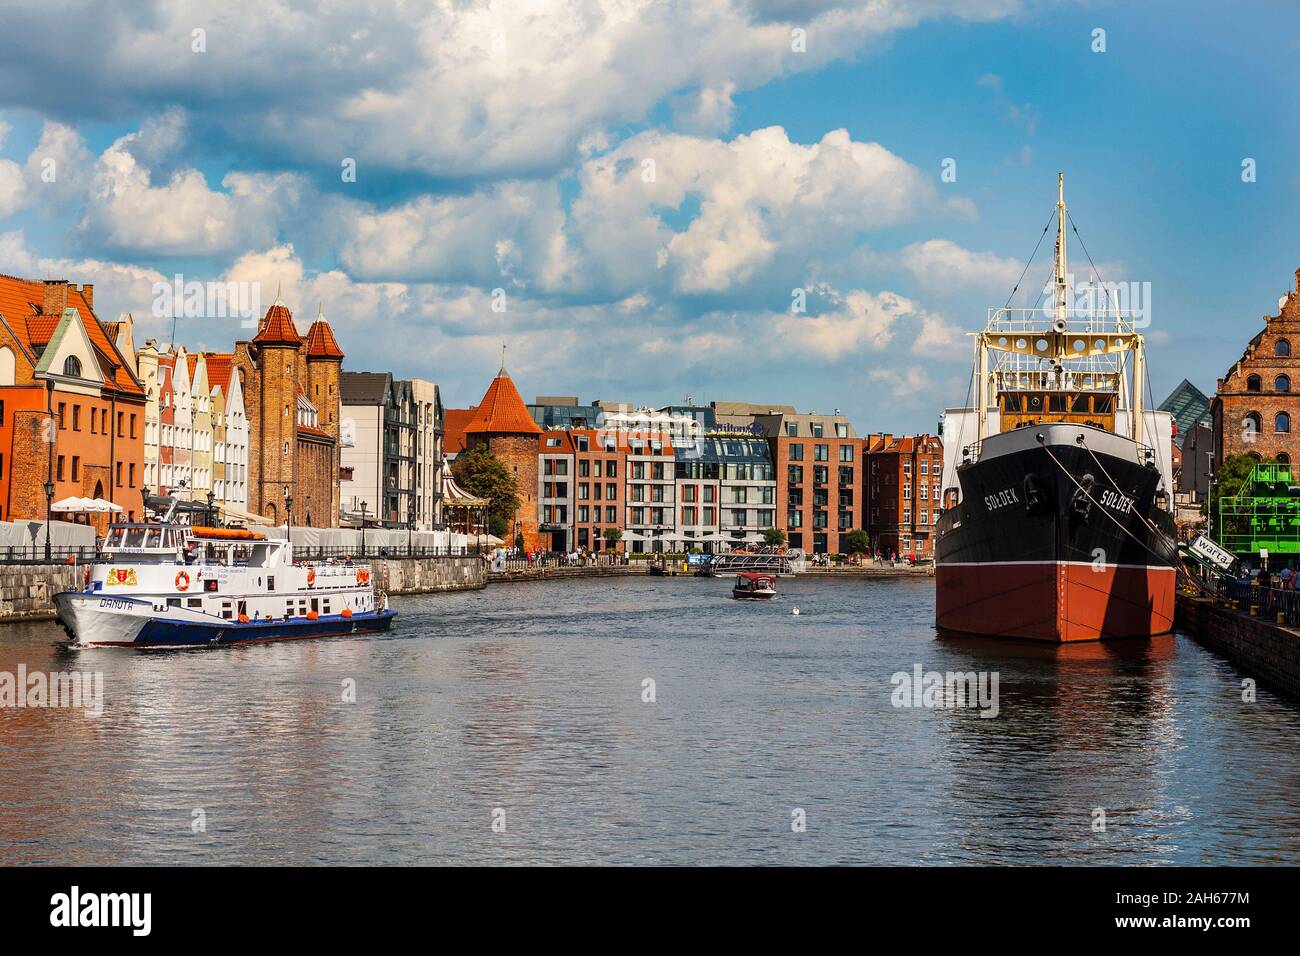 Alte Mottlau in Danzig mit Museum bulk carrier Schiff Soldek, turistic Schiff Danuta und Angeln Damm im Hintergrund Stockfoto